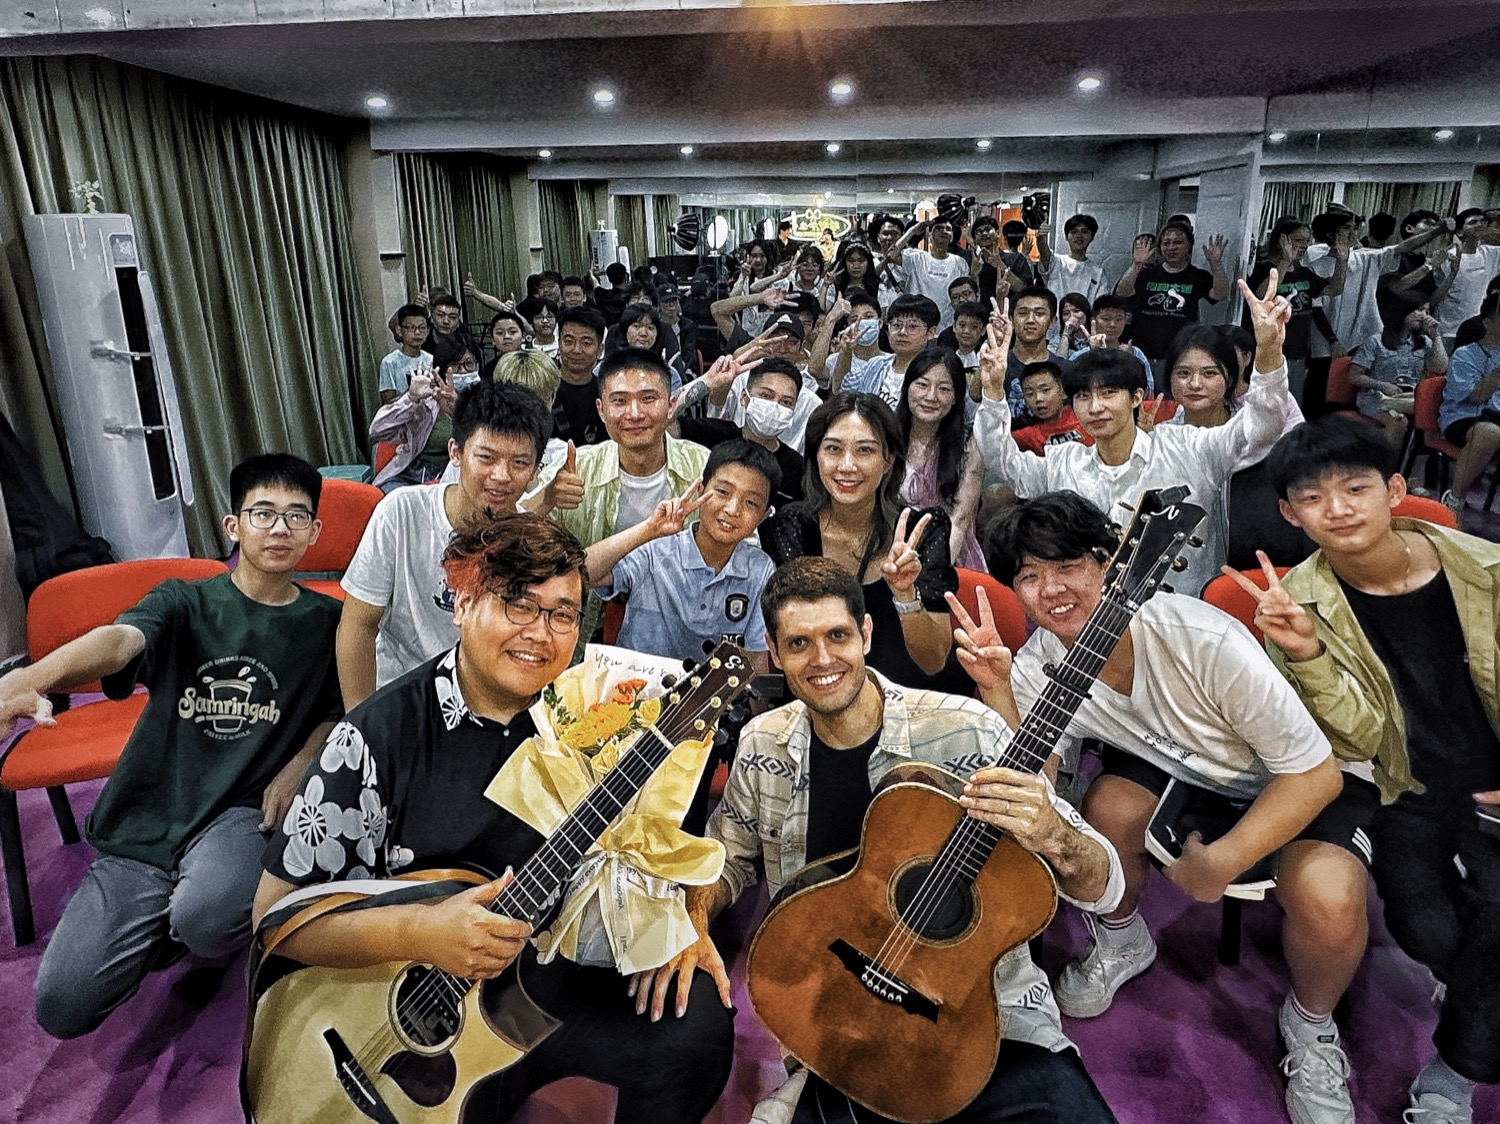 okapi’s China tour Fuzhou Edition part 1